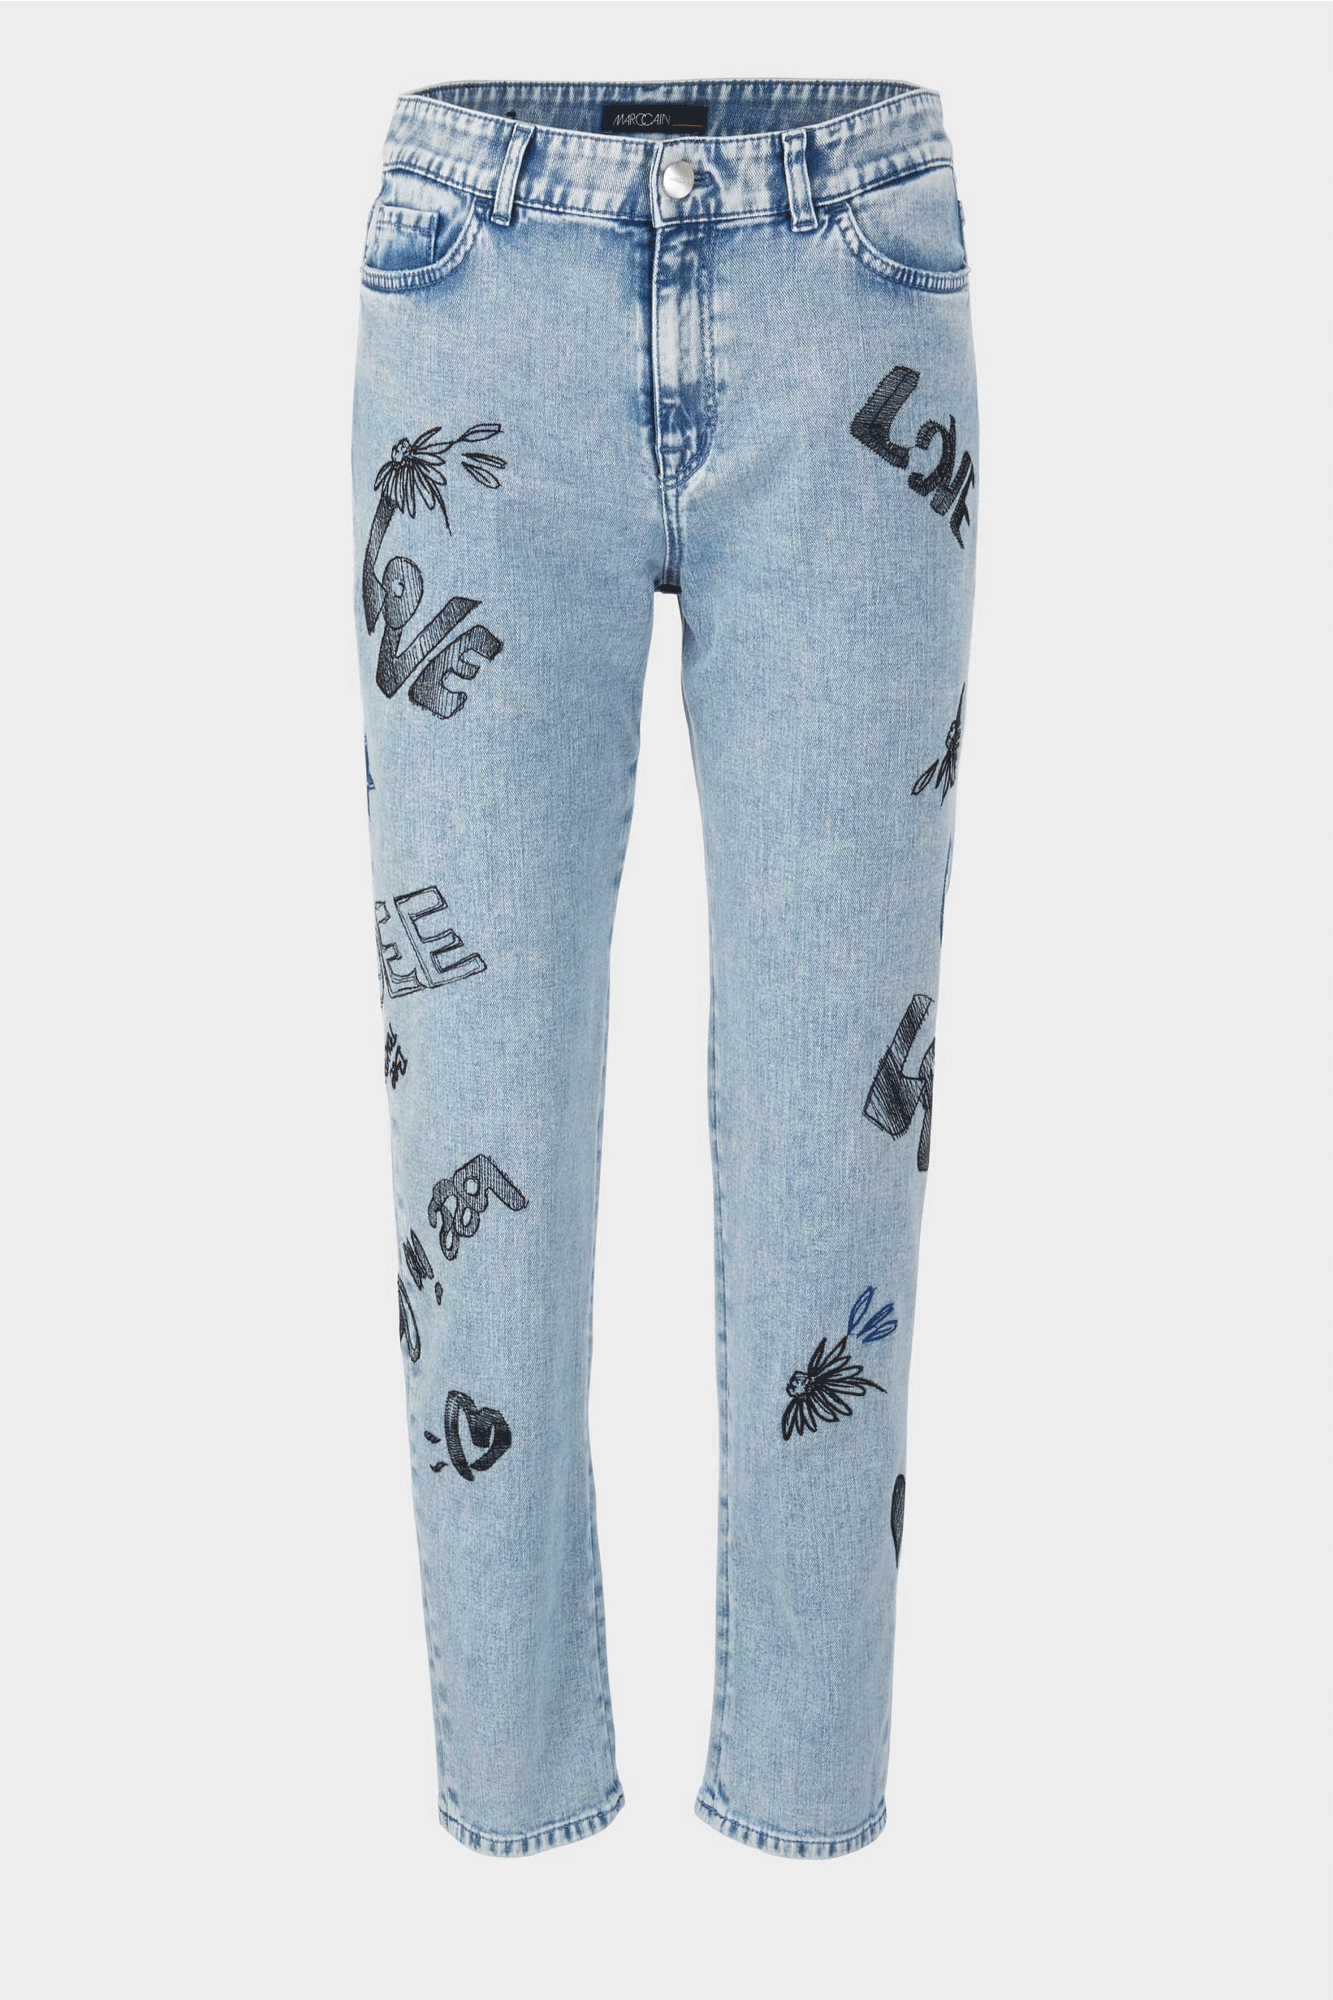 Vintage Printed Jean